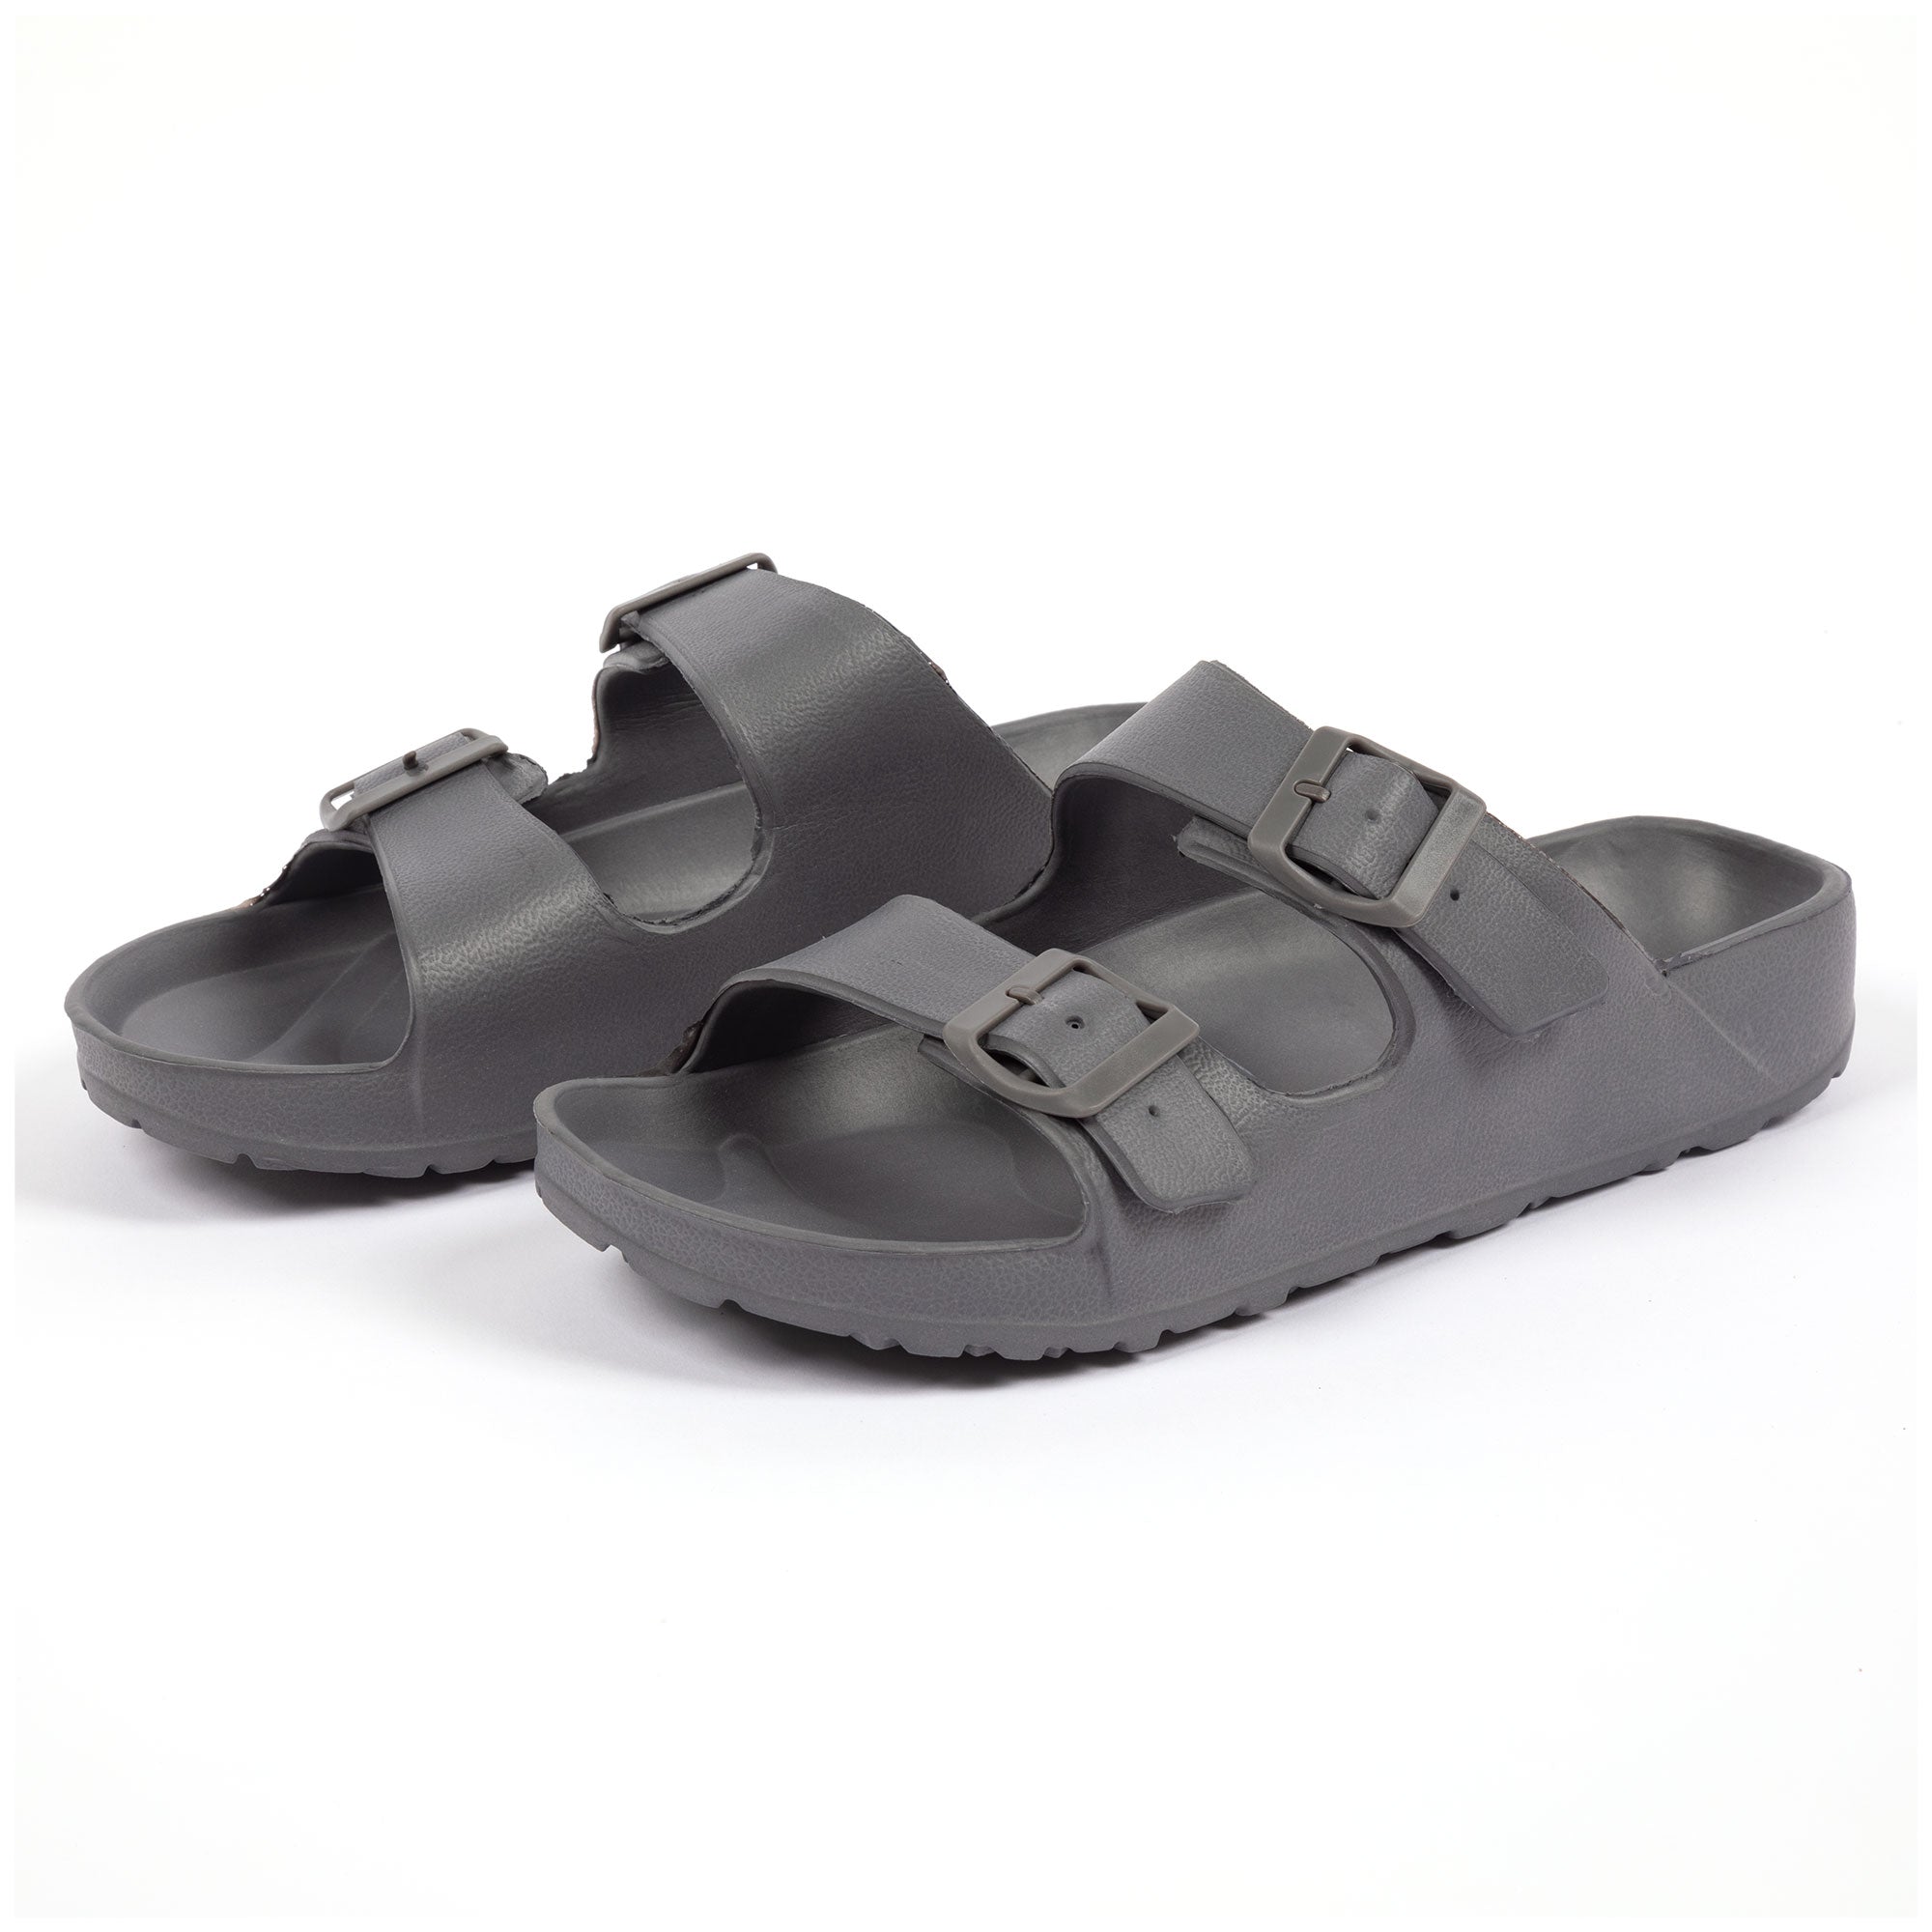 Men's Double Buckle Slide Sandals - Gray - 13